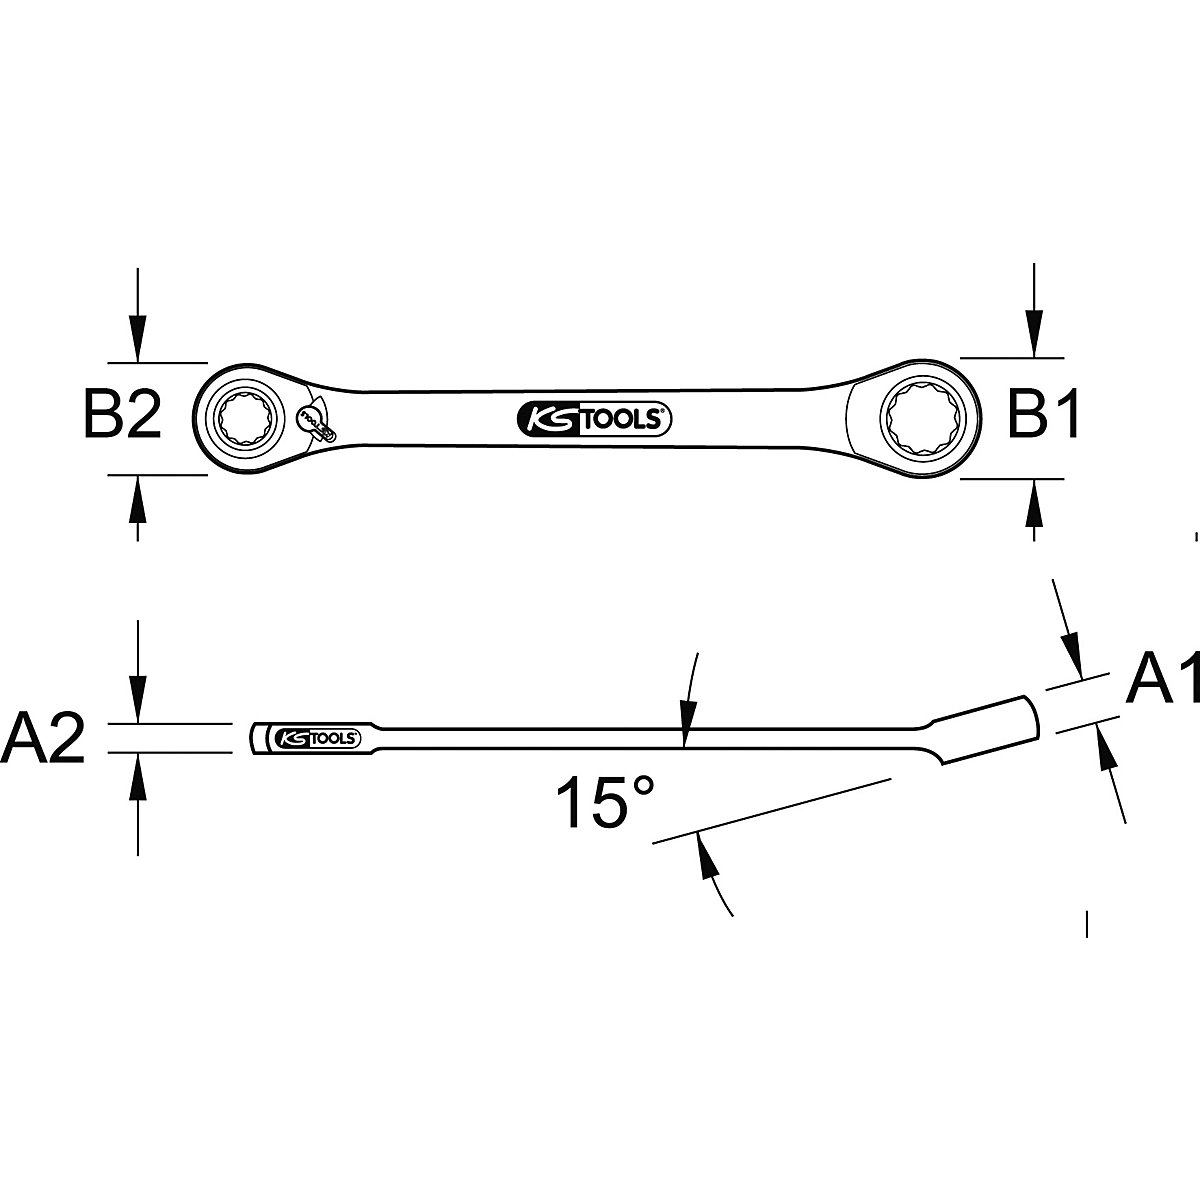 Mini prstenasti ključ s čegrtaljkom za bitove GEARplus – KS Tools (Prikaz proizvoda 5)-4